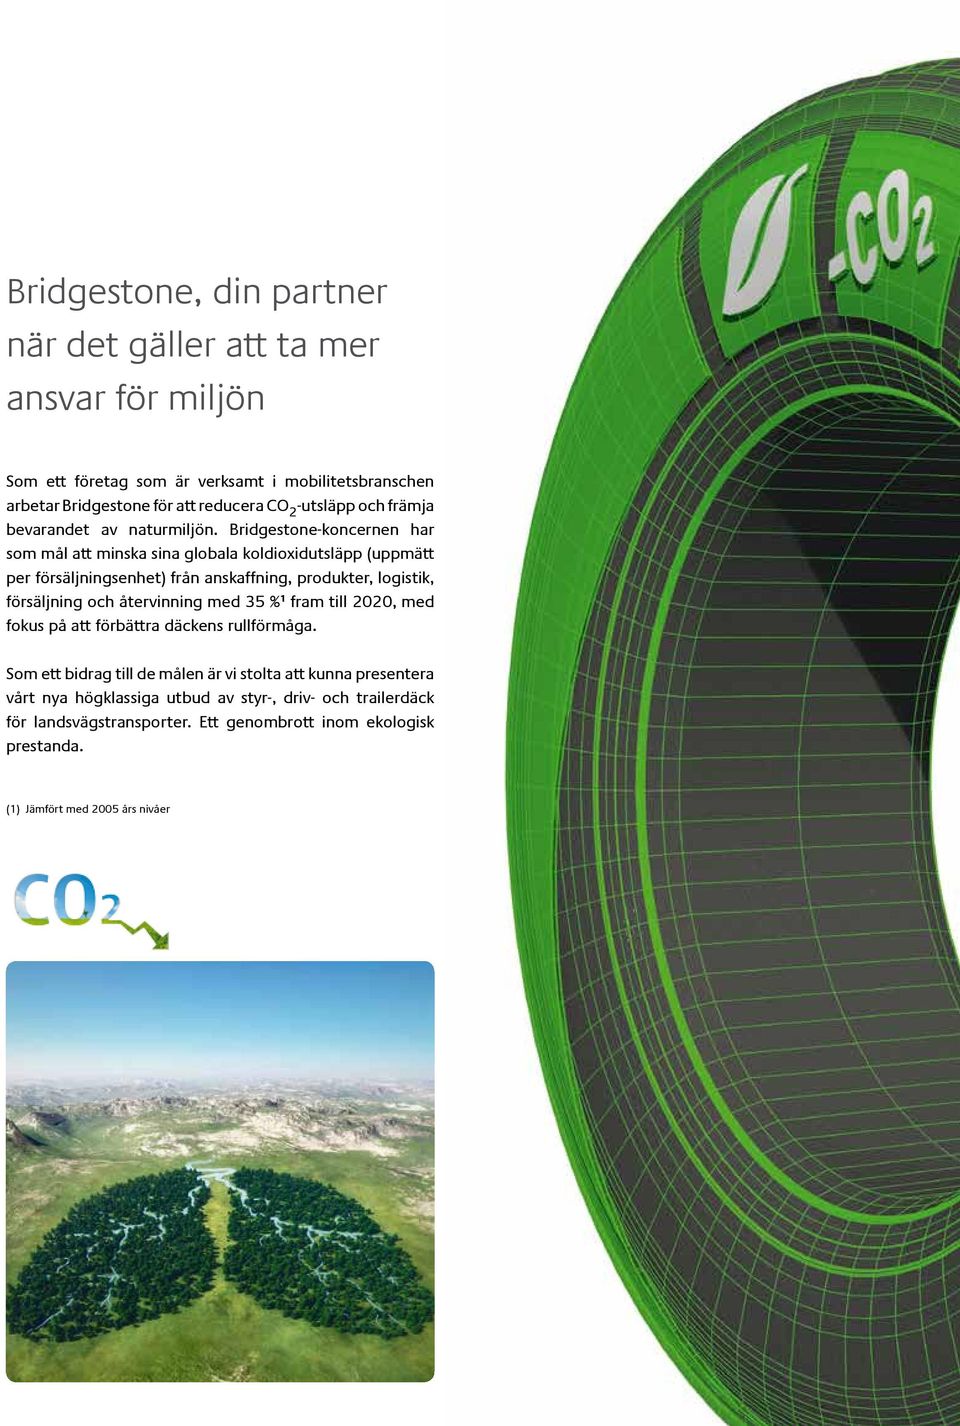 Bridgestone-koncernen har som mål att minska sina globala koldioxidutsläpp (uppmätt per försäljningsenhet) från anskaffning, produkter, logistik, försäljning och